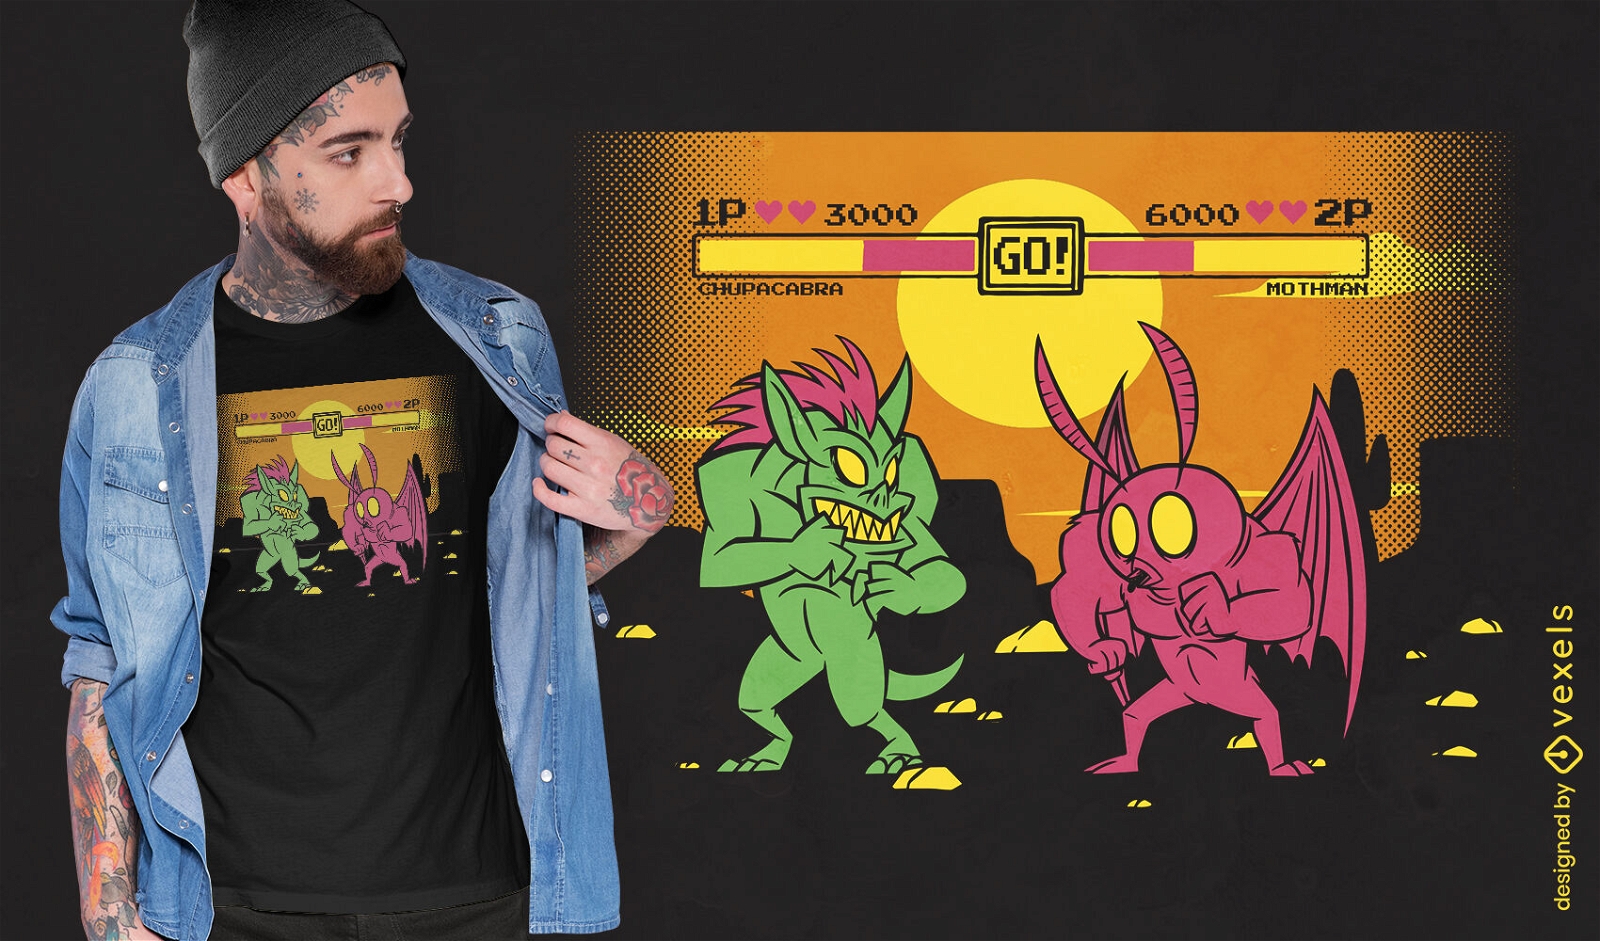 Retro-Arcade-Monster bek?mpfen T-Shirt-Design